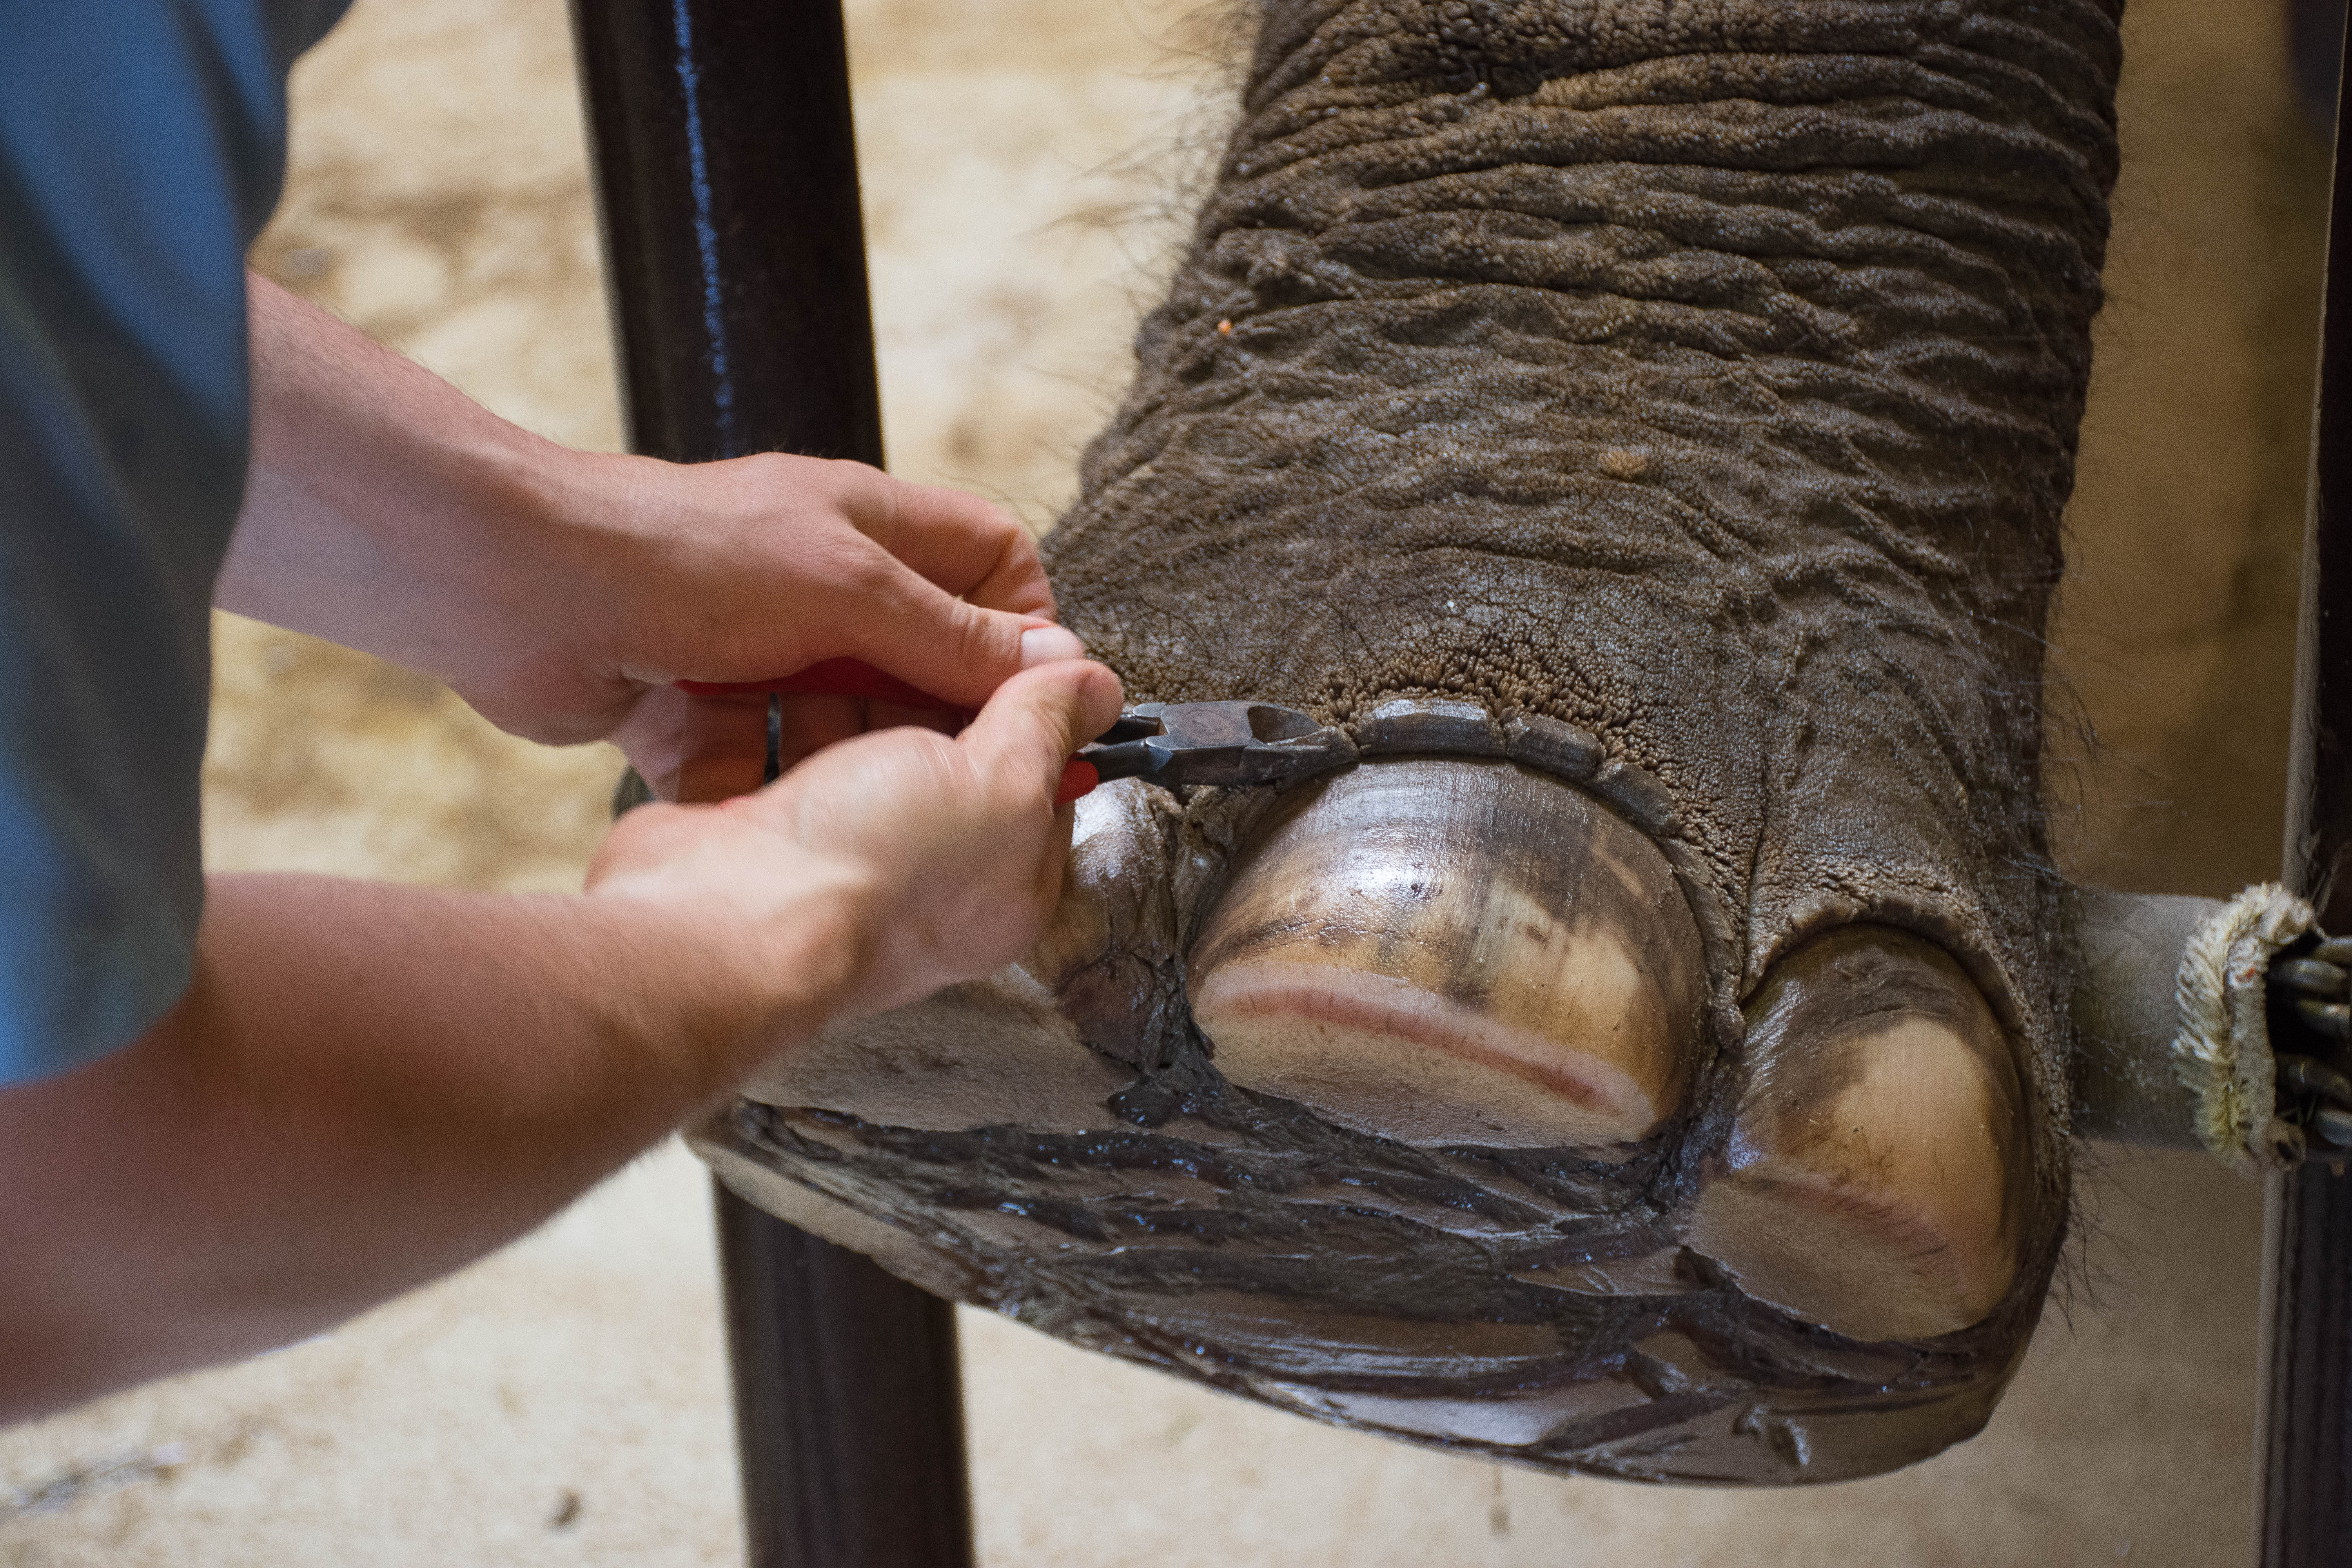 Spa Season for the Elephants - Buffalo Zoo